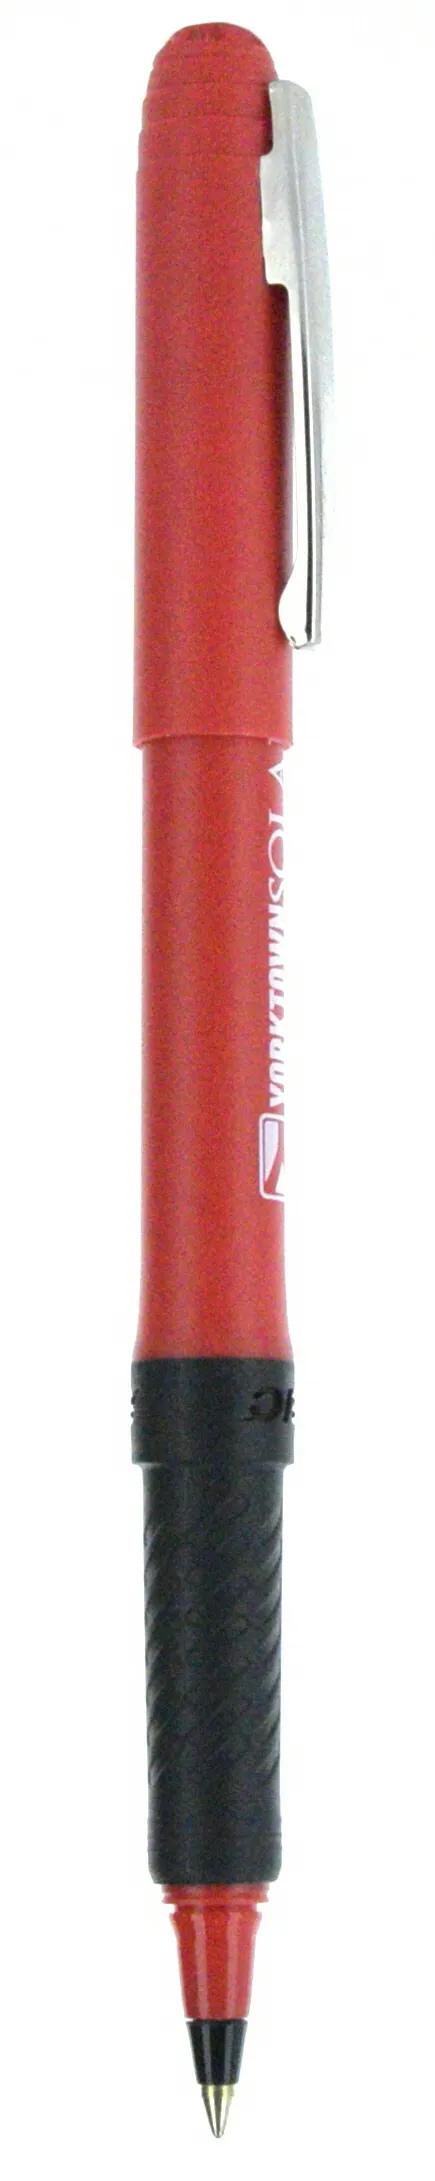 BIC® Grip Roller Pen 71 of 147